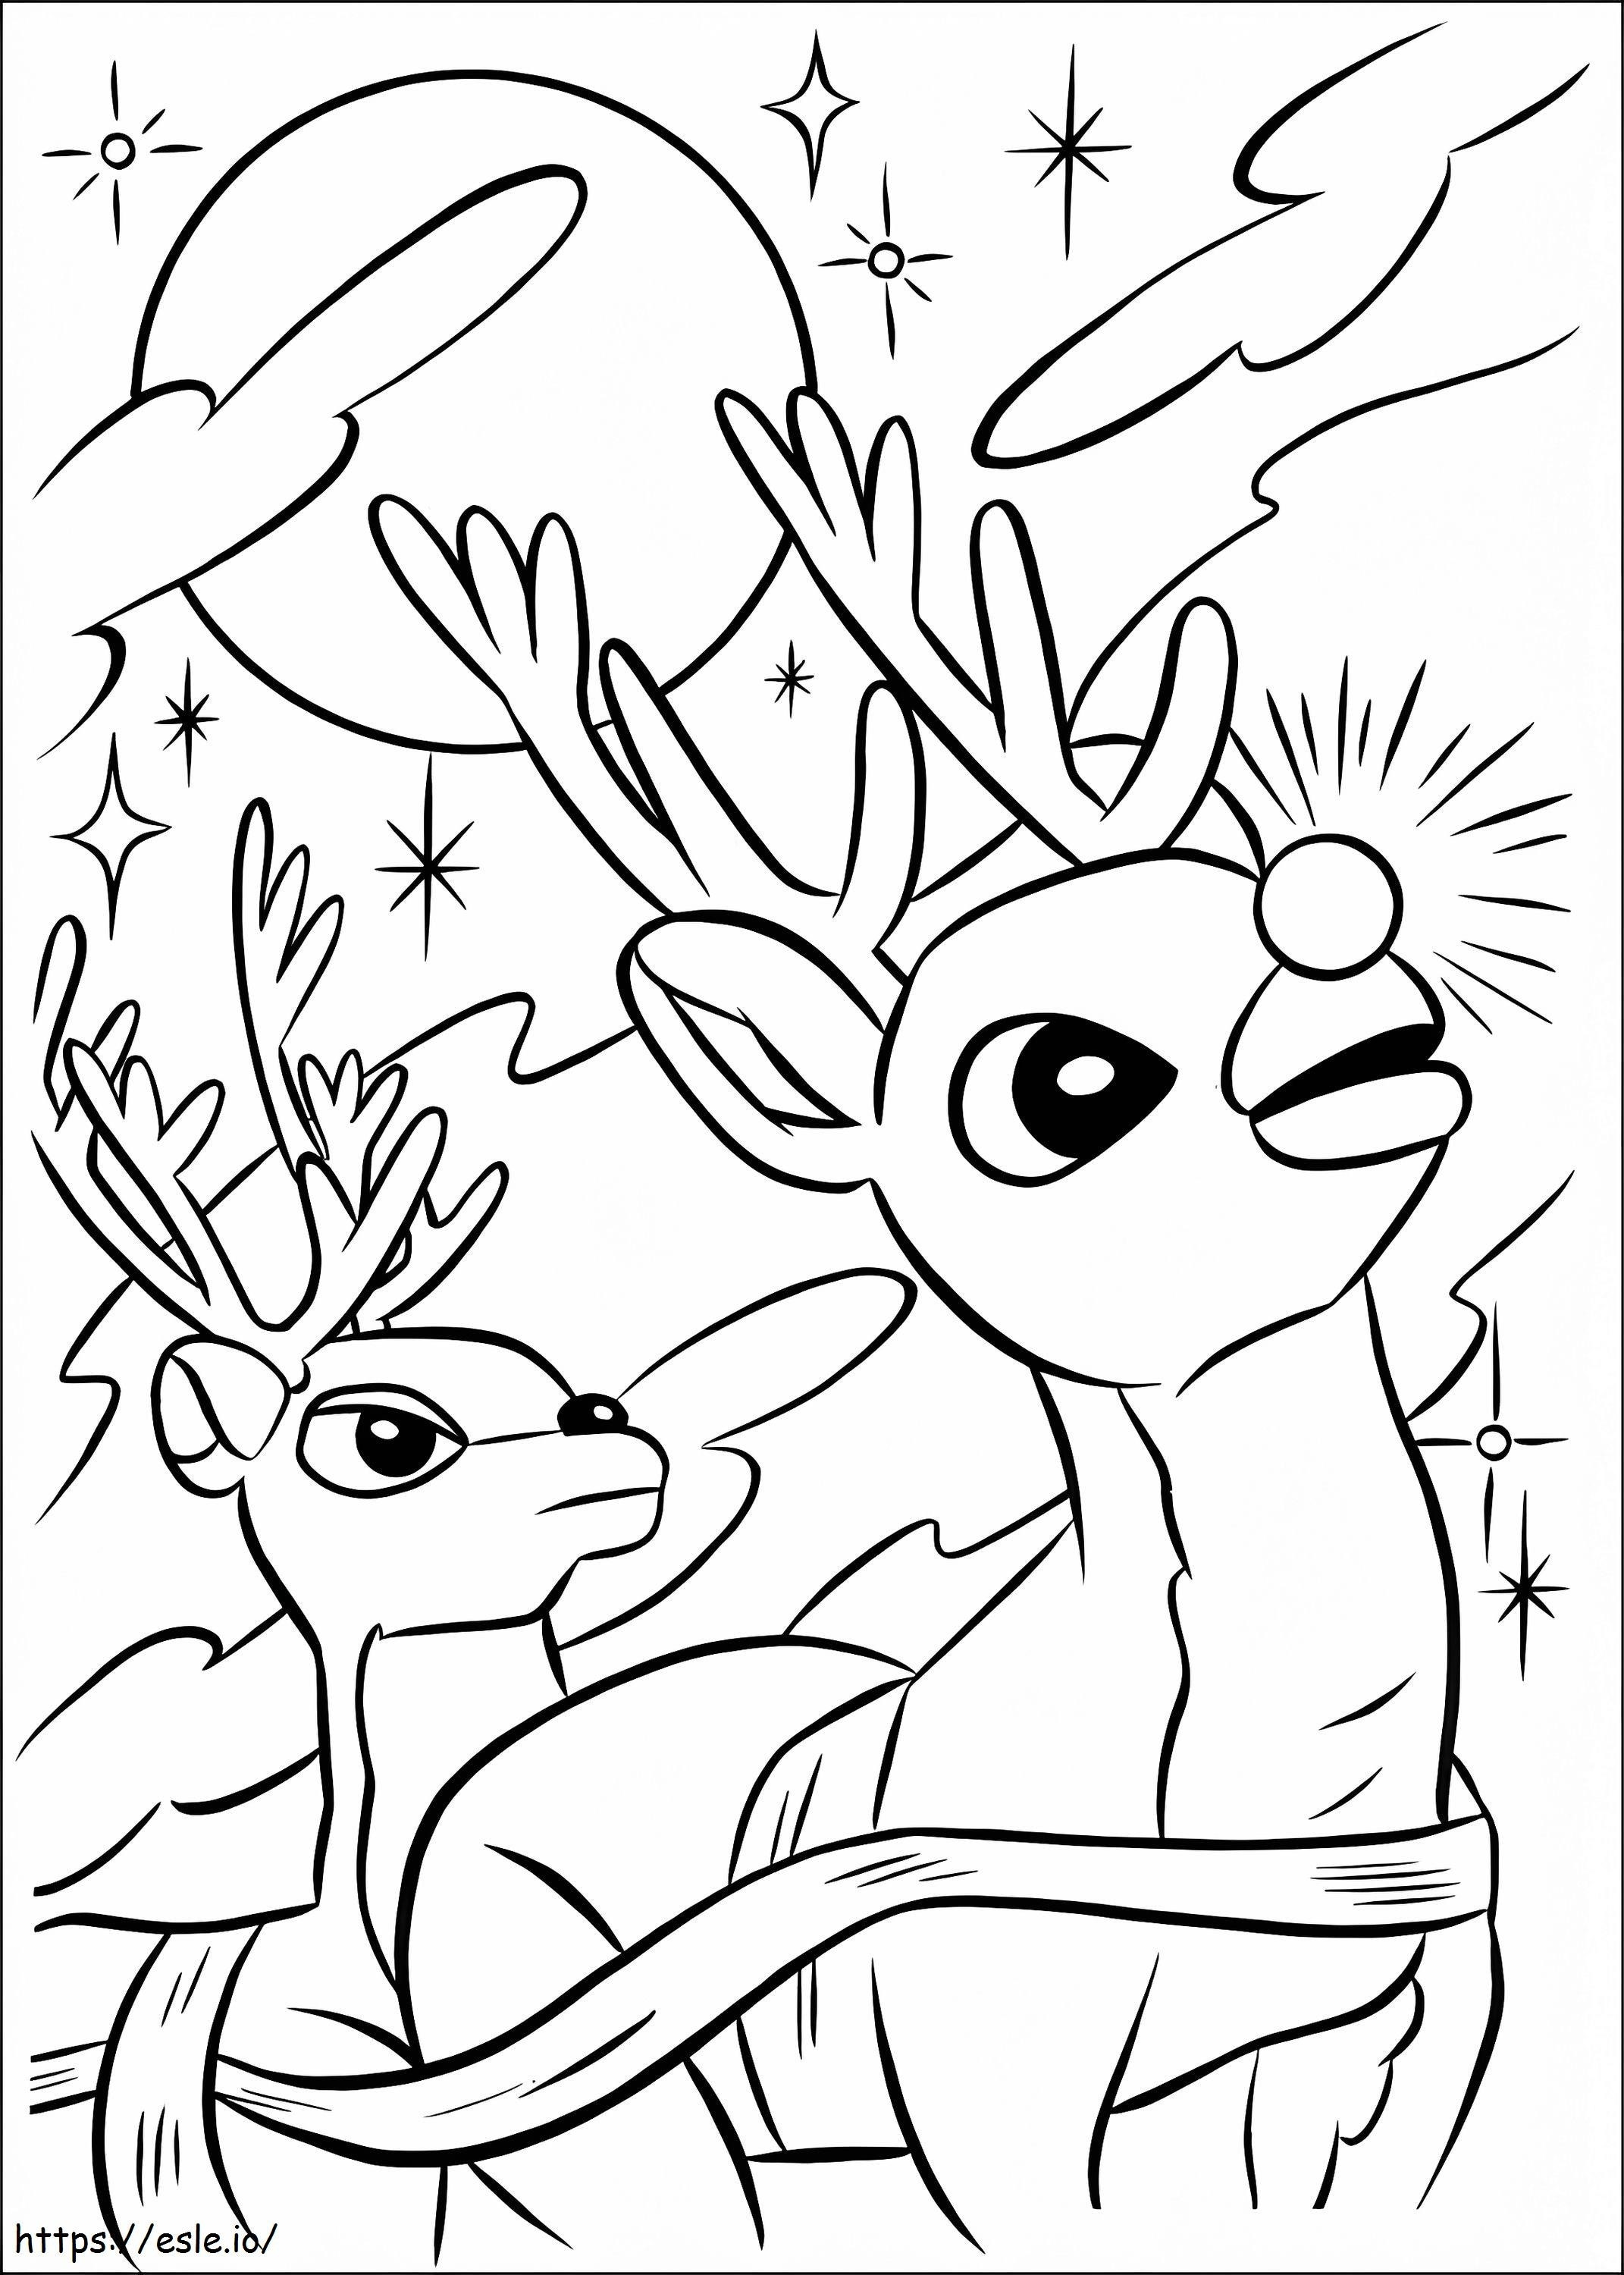 Rudolph A vörös orrú rénszarvas 1 kifestő